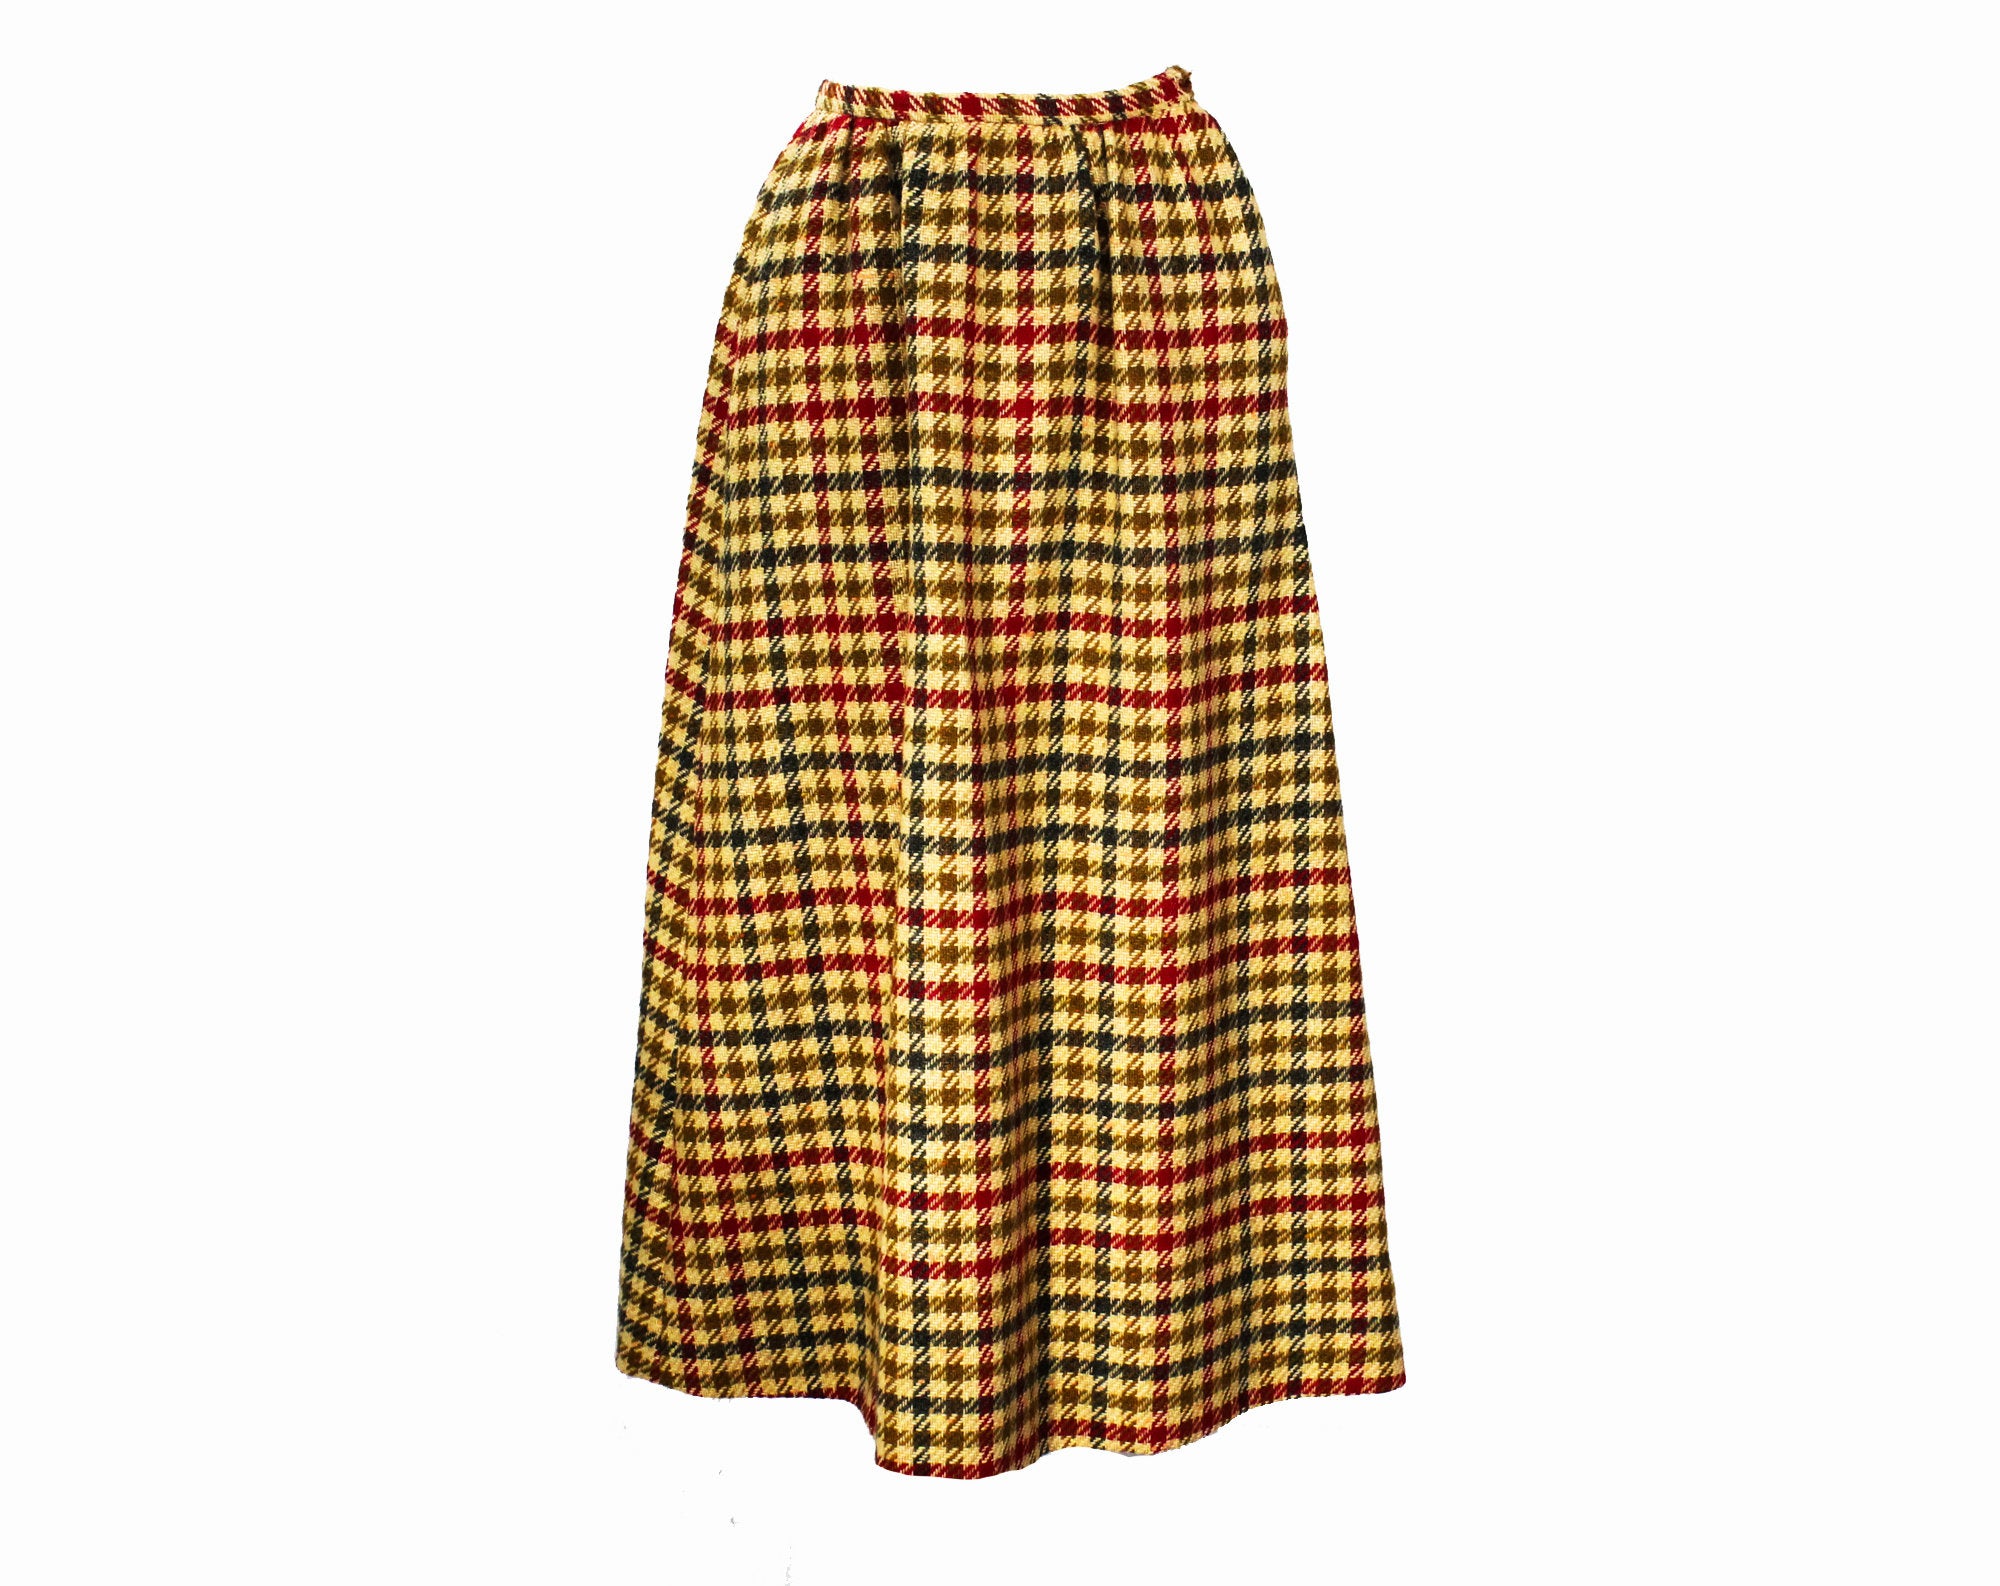 Red & Navy Wool Blend Tweed Maxi Skirt Suit